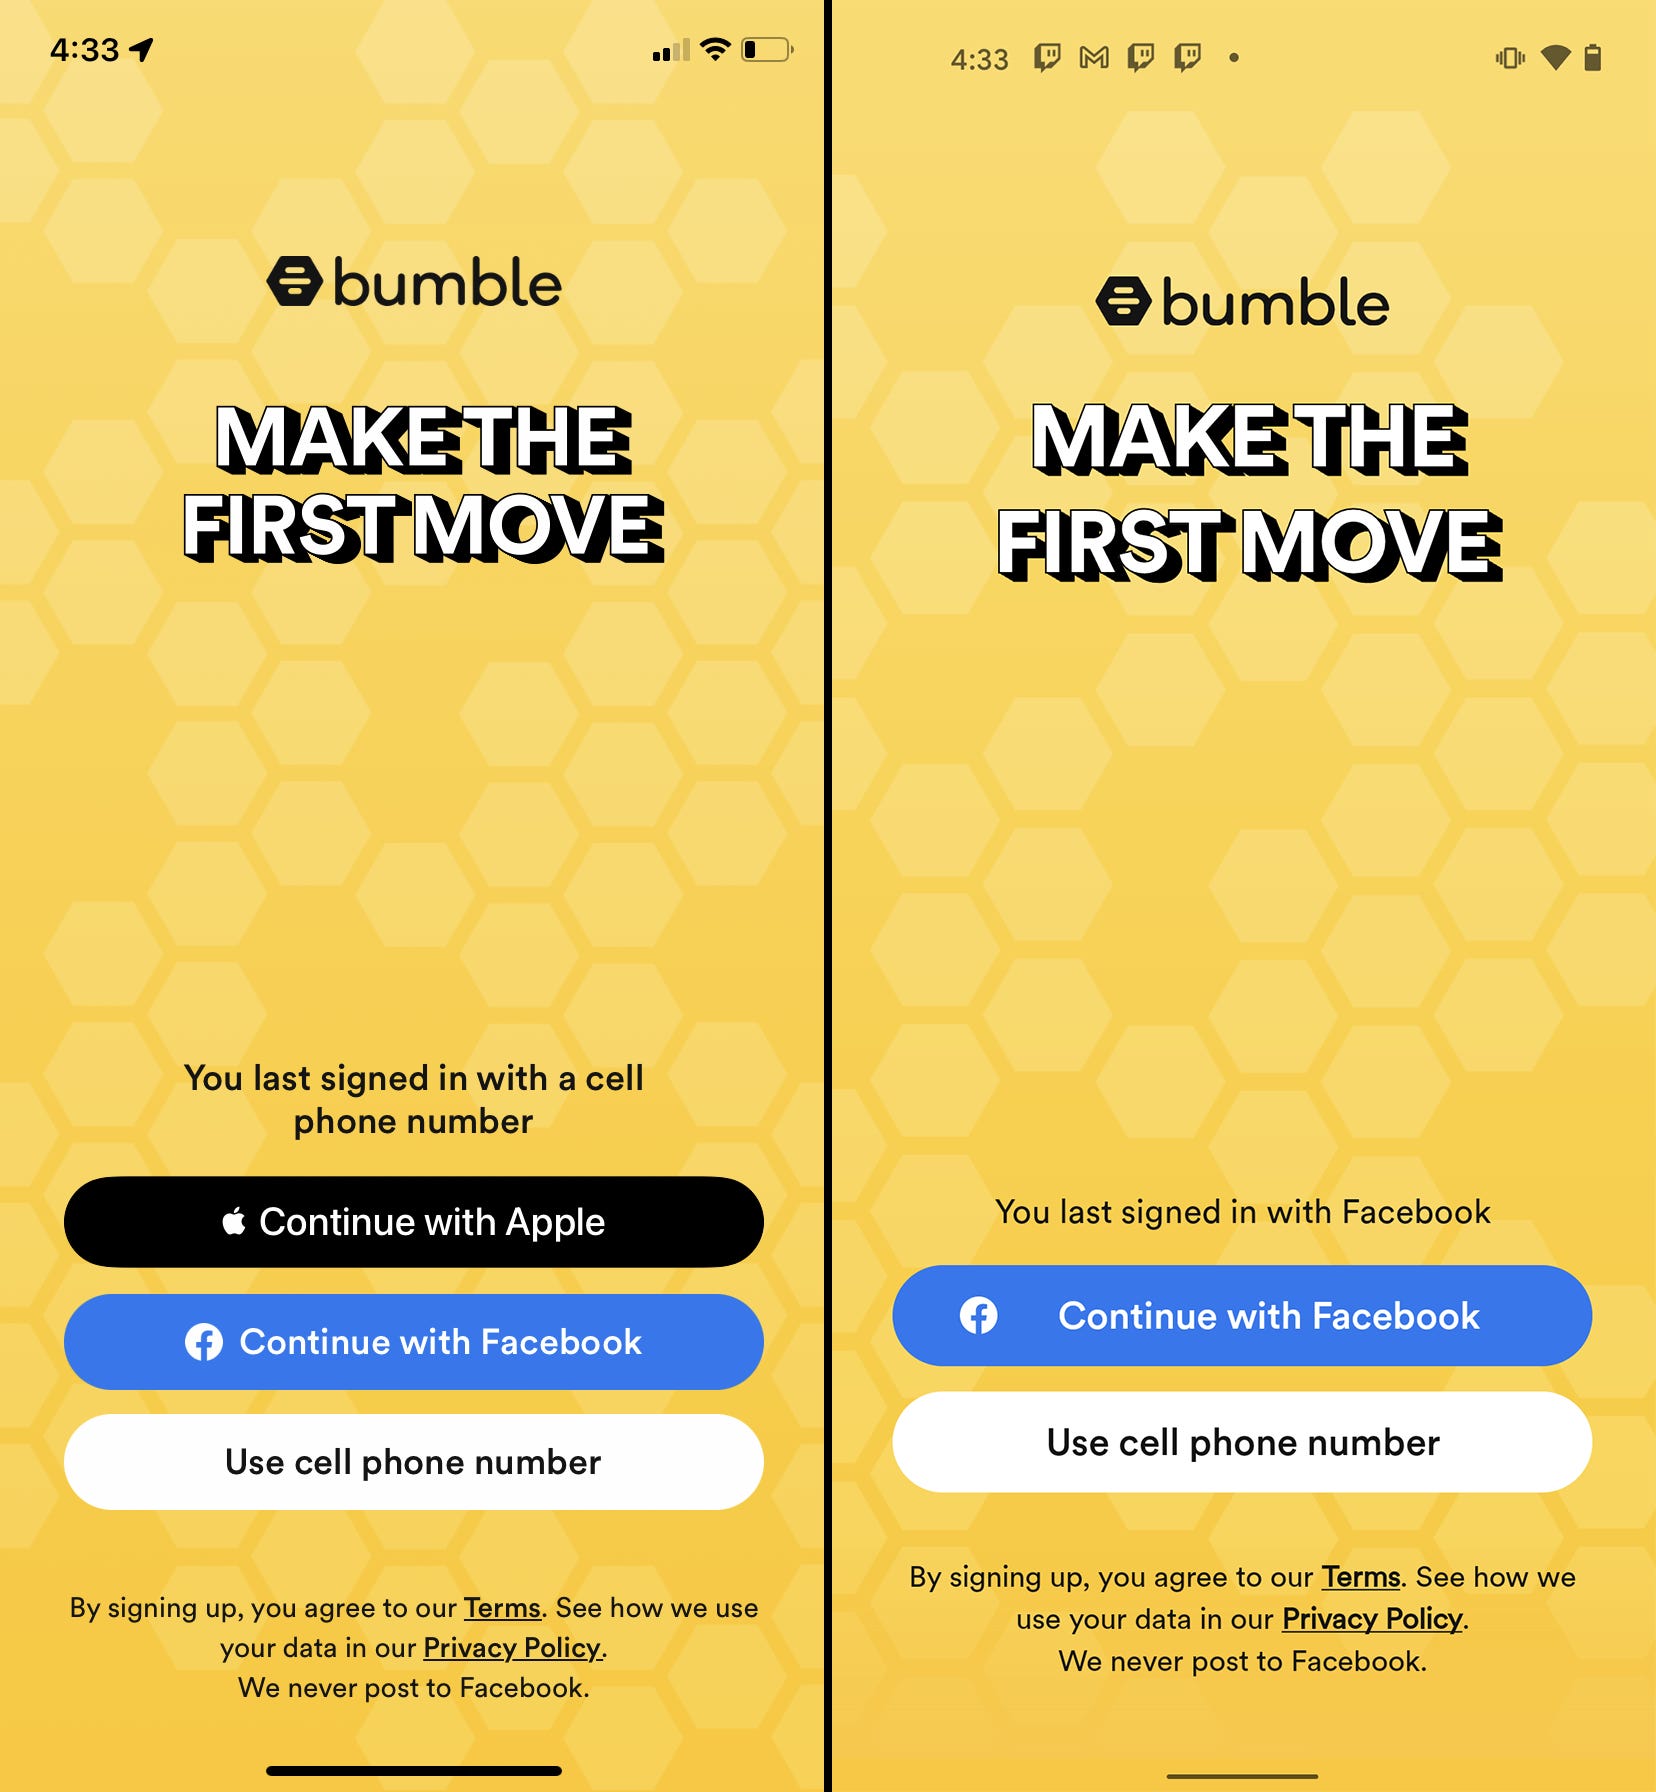 Le pagine di login di iPhone (sinistra) e Android (destra) per Bumble.